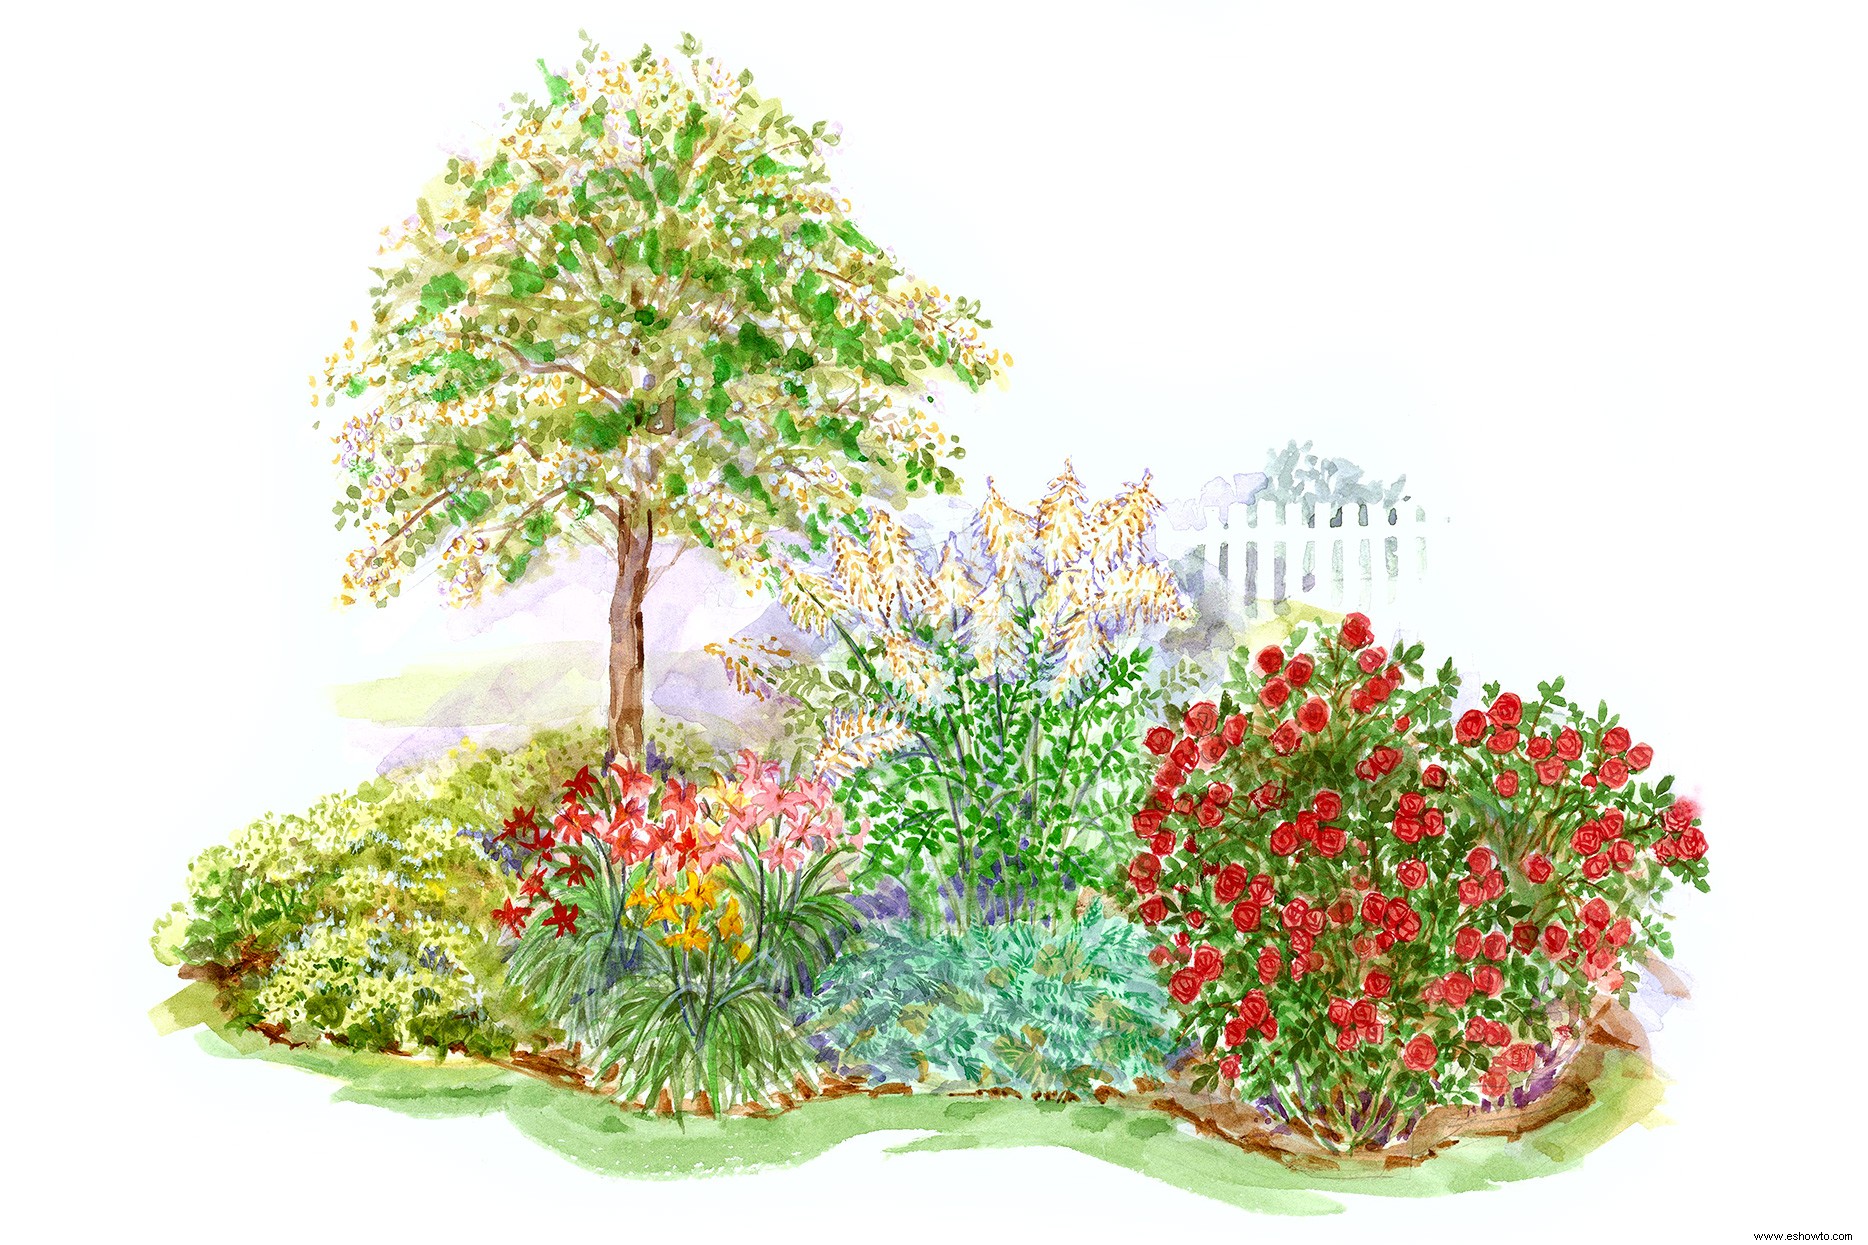 ¿Tienes tierra arcillosa? Este sencillo plan de jardín presenta hermosas plantas que prosperan en condiciones difíciles 